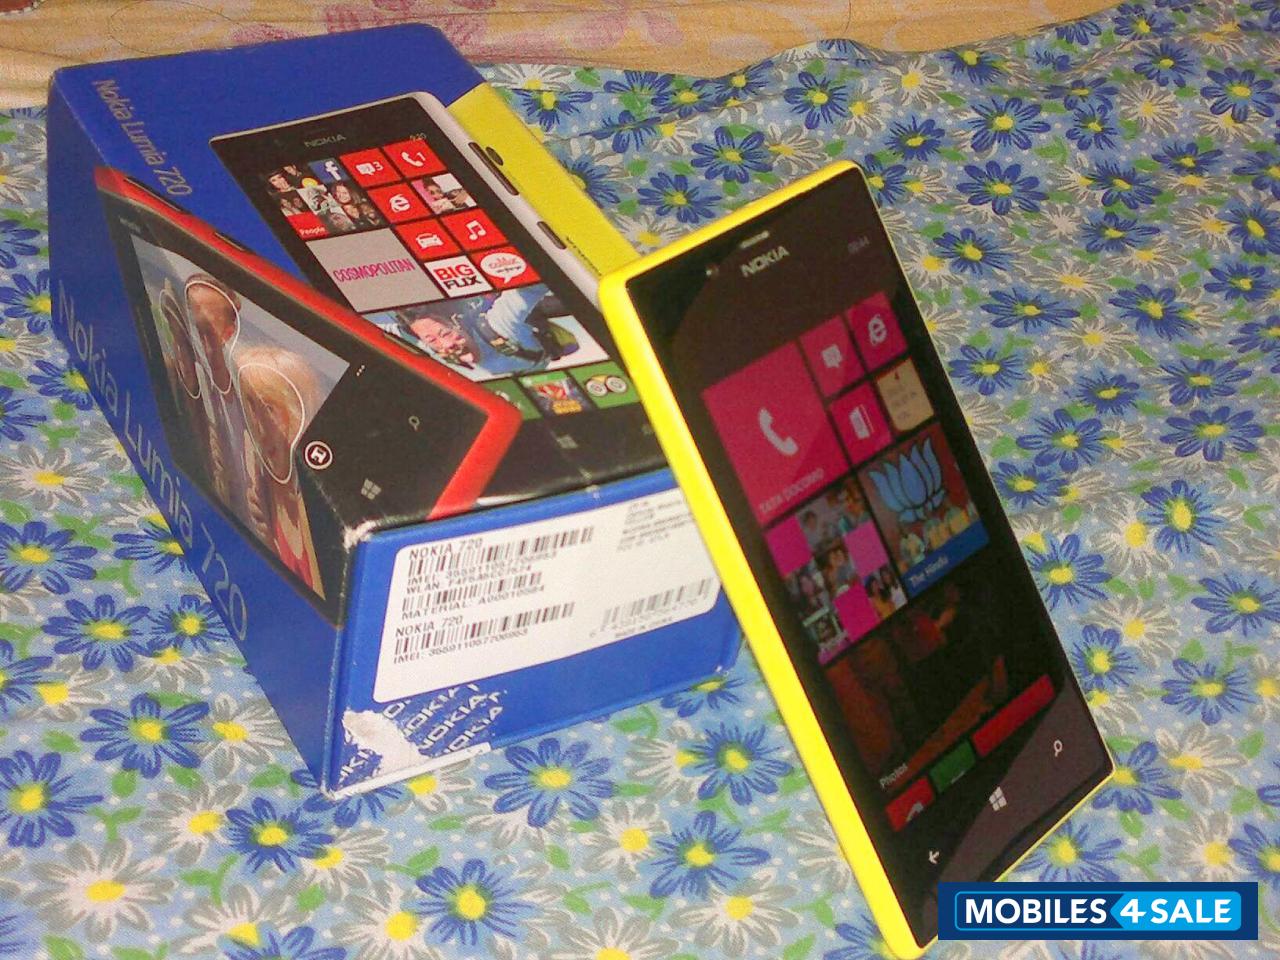 Yellow Nokia Lumia 720